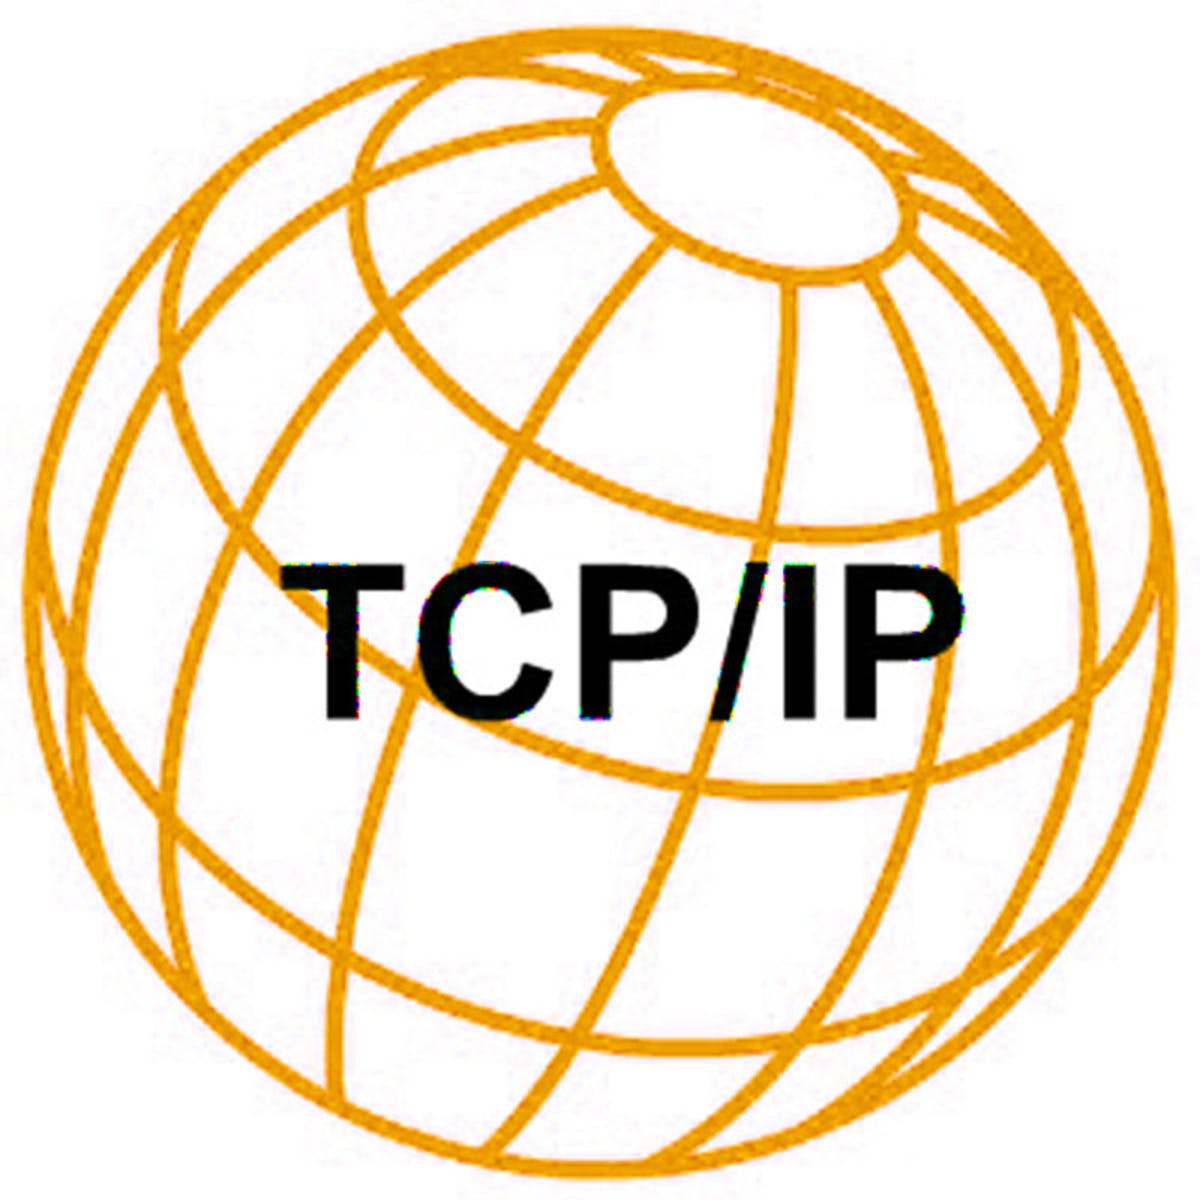 Protocoles TCP/IP